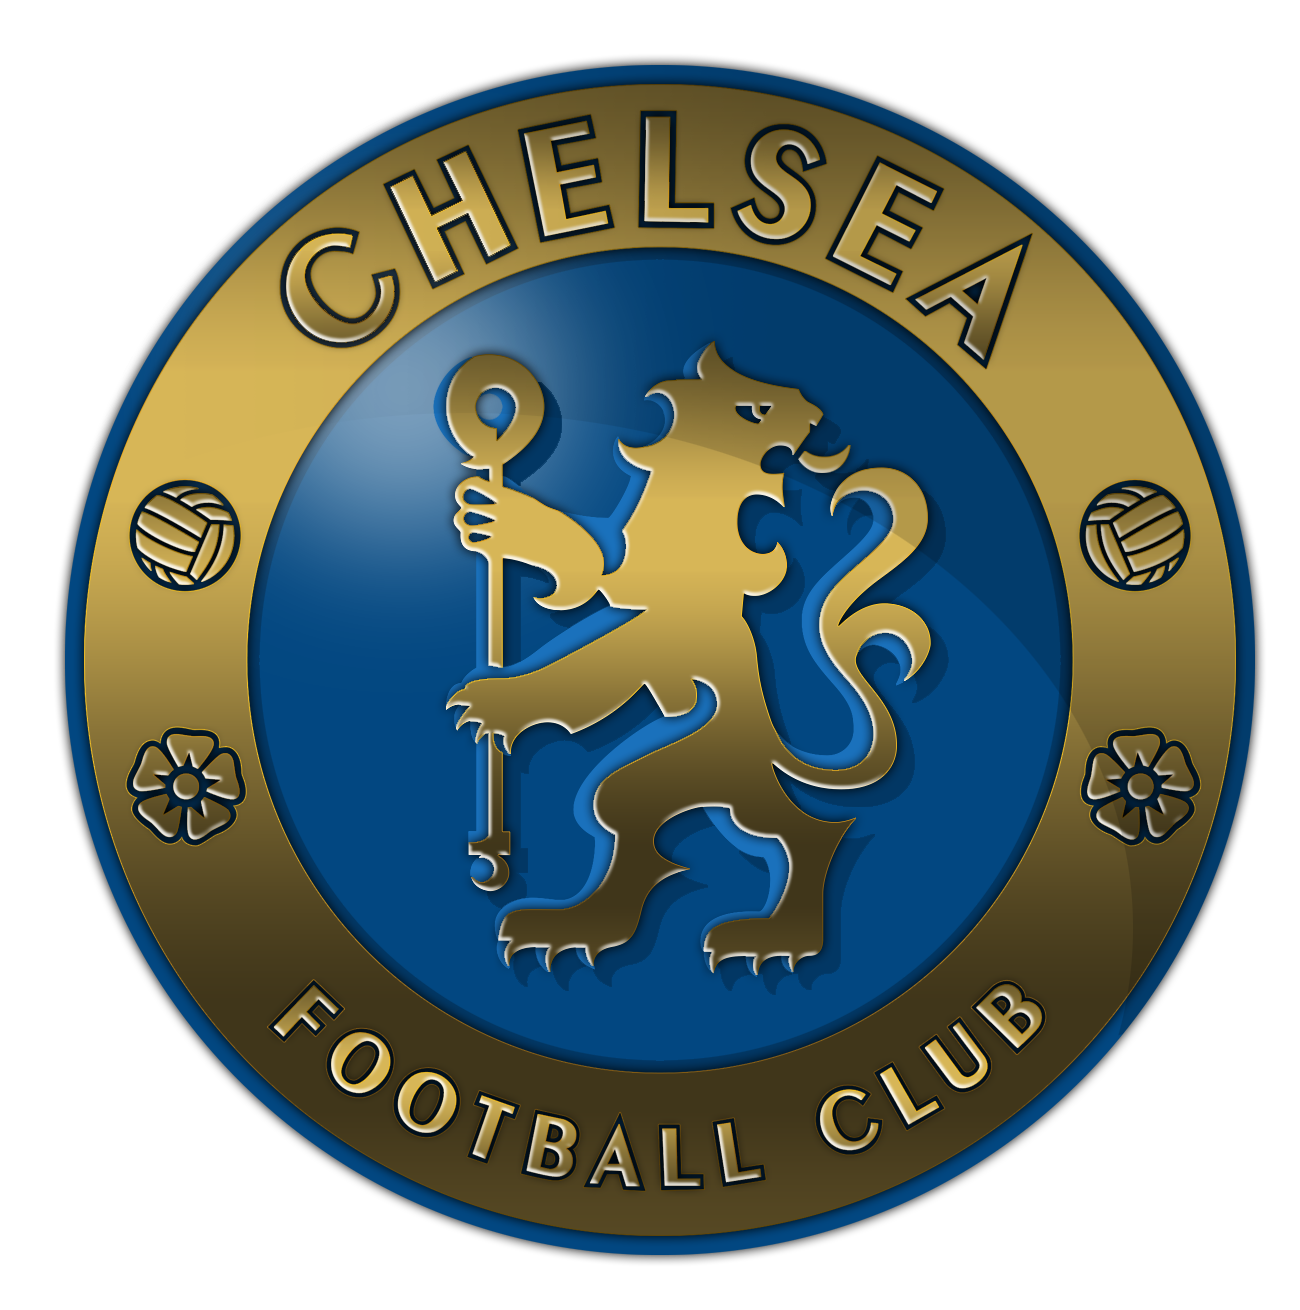 File:Chelsea FC.svg